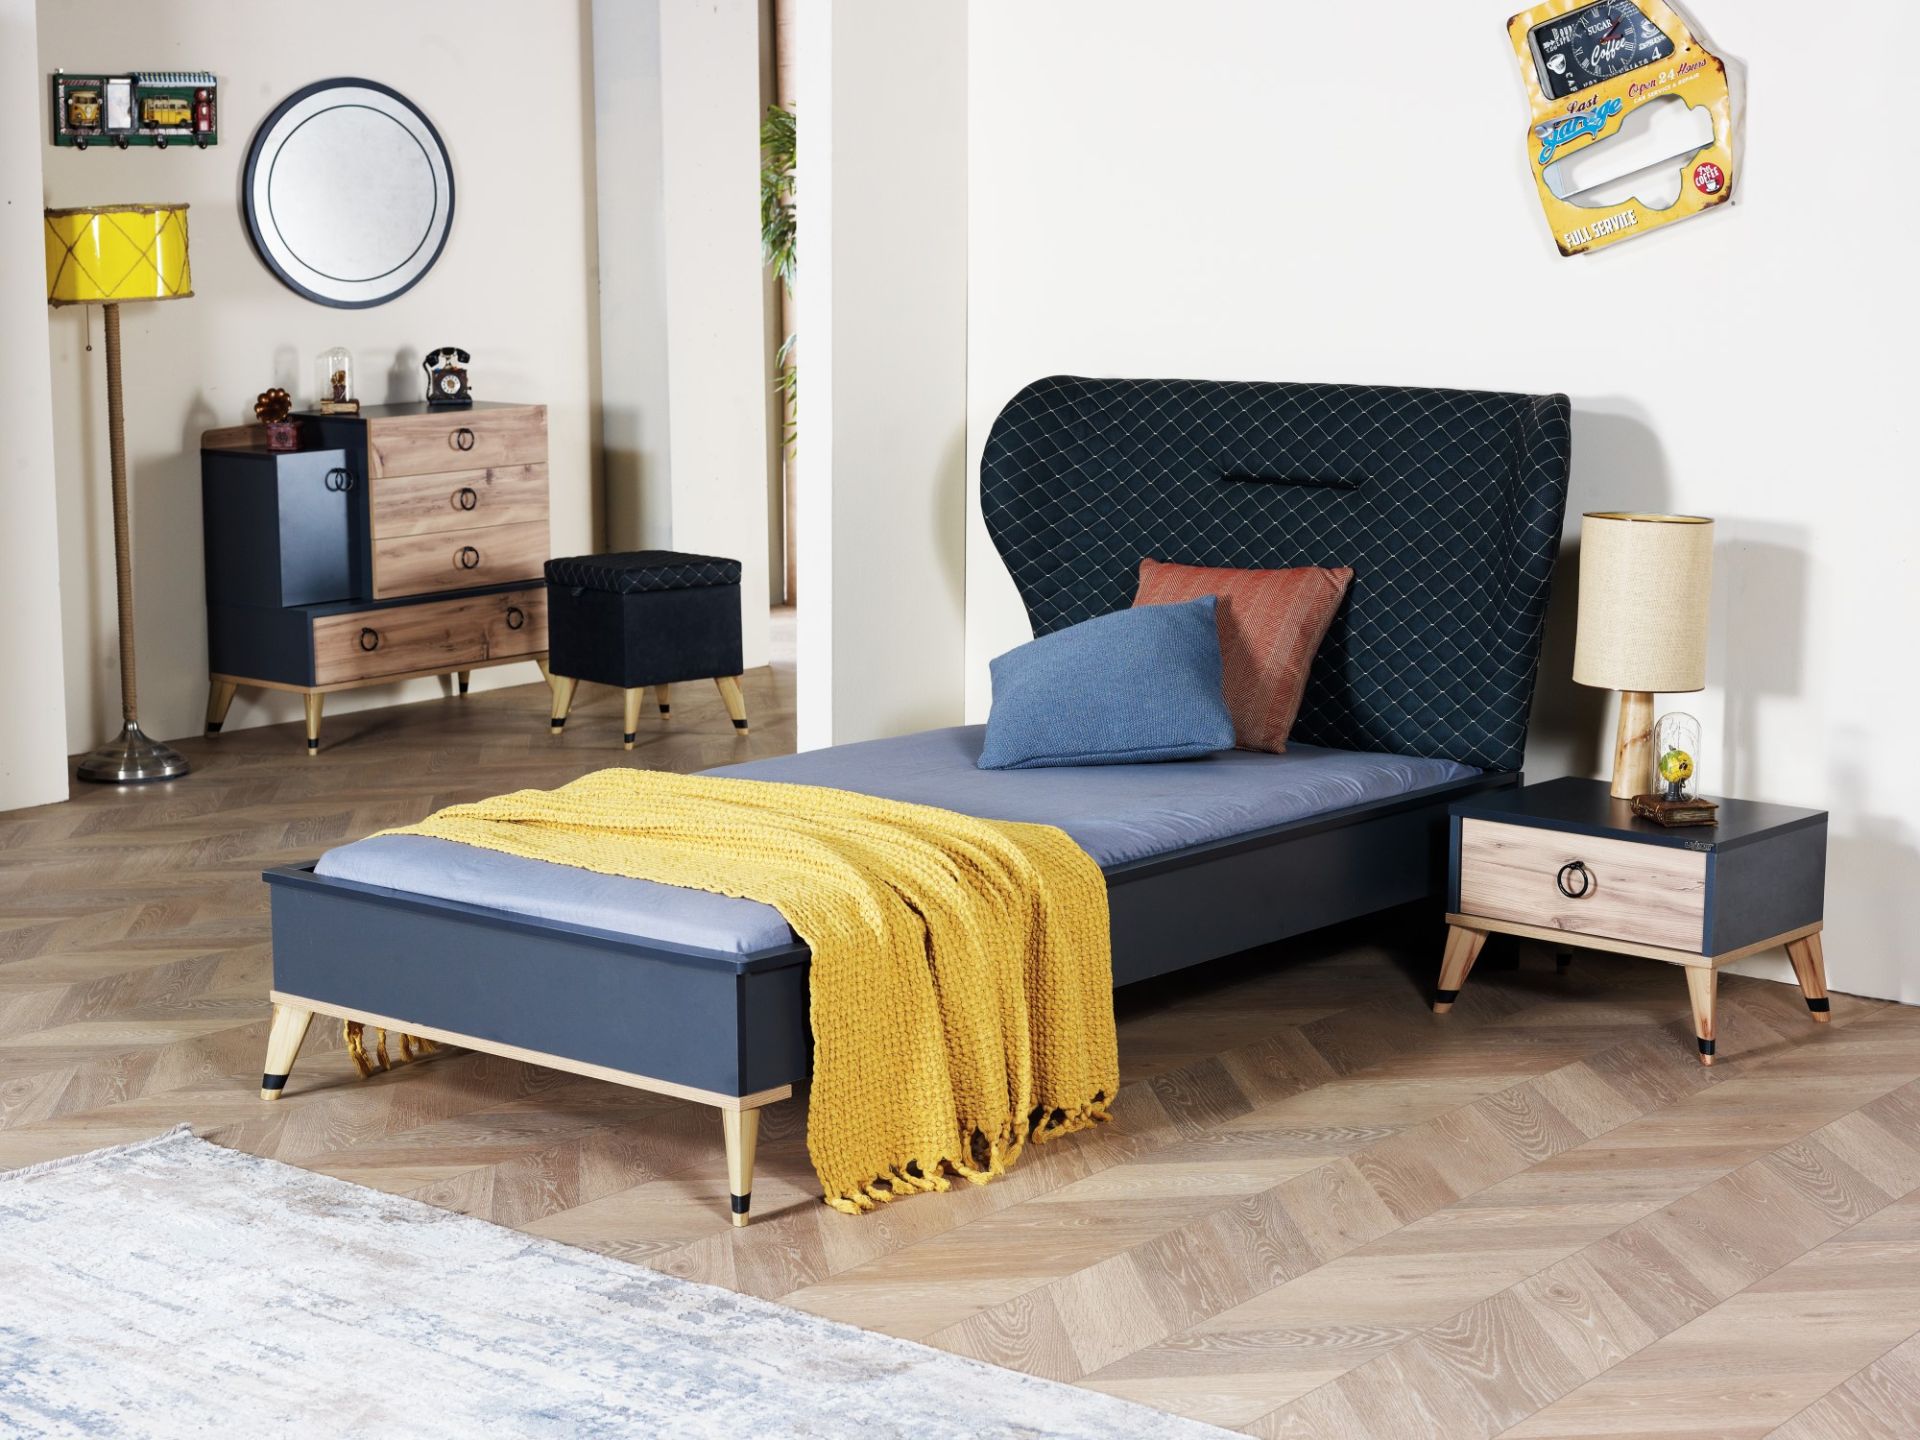 Modernes und schönes Jugendbett bei Möbel Lux